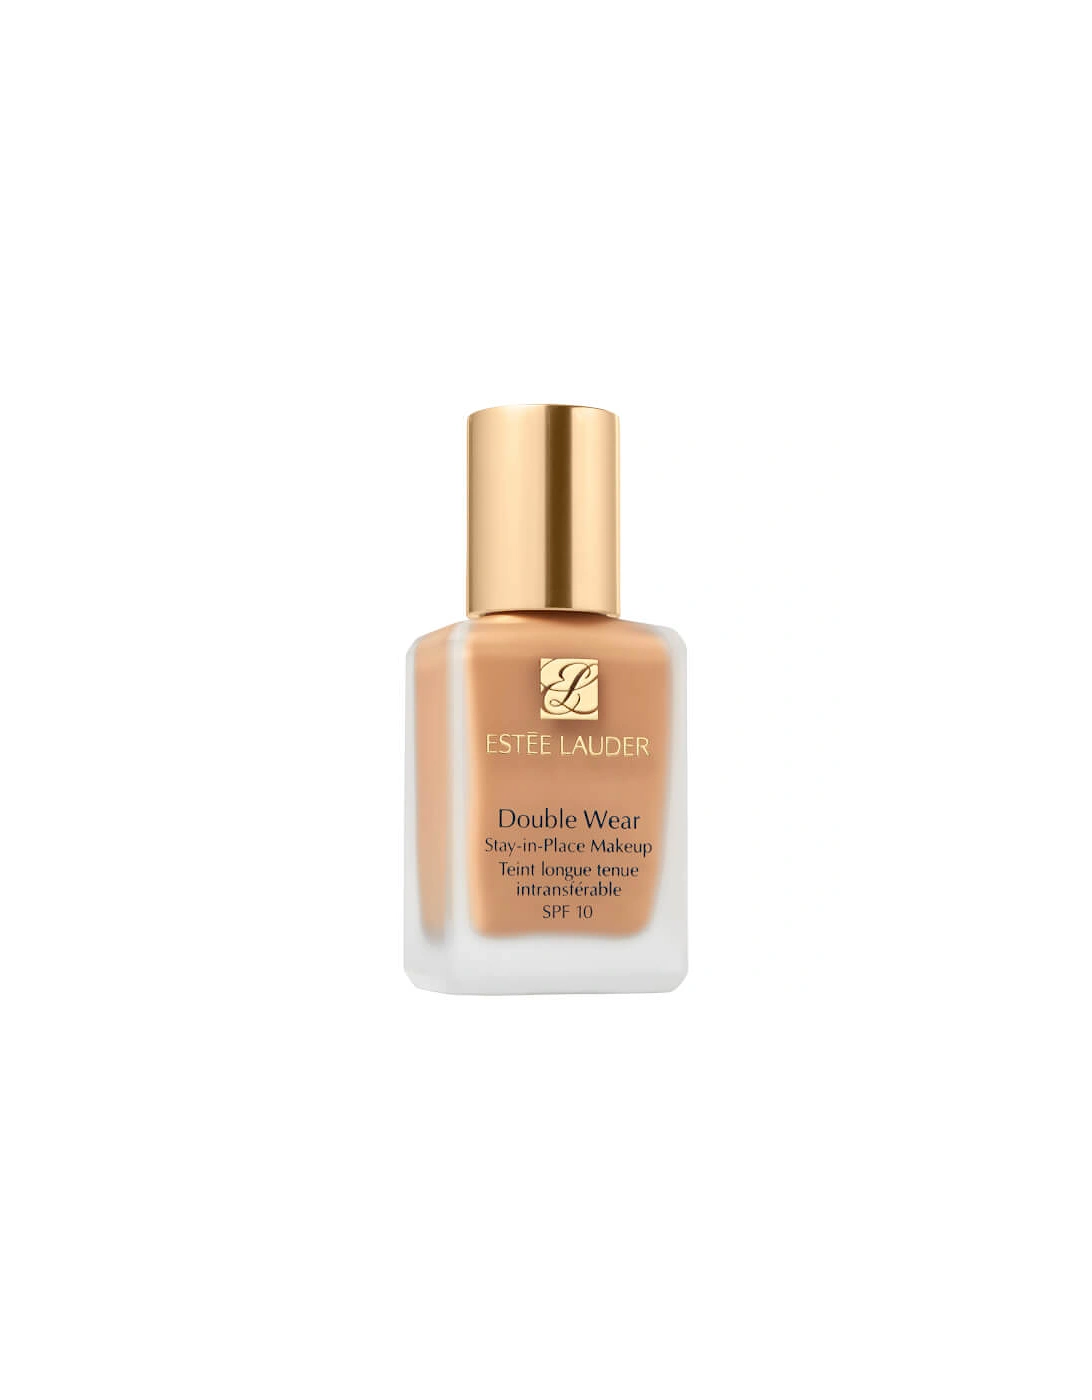 Estée Lauder Double Wear Stay-in-Place Makeup 30ml - 4W1 Honey Bronze, 2 of 1